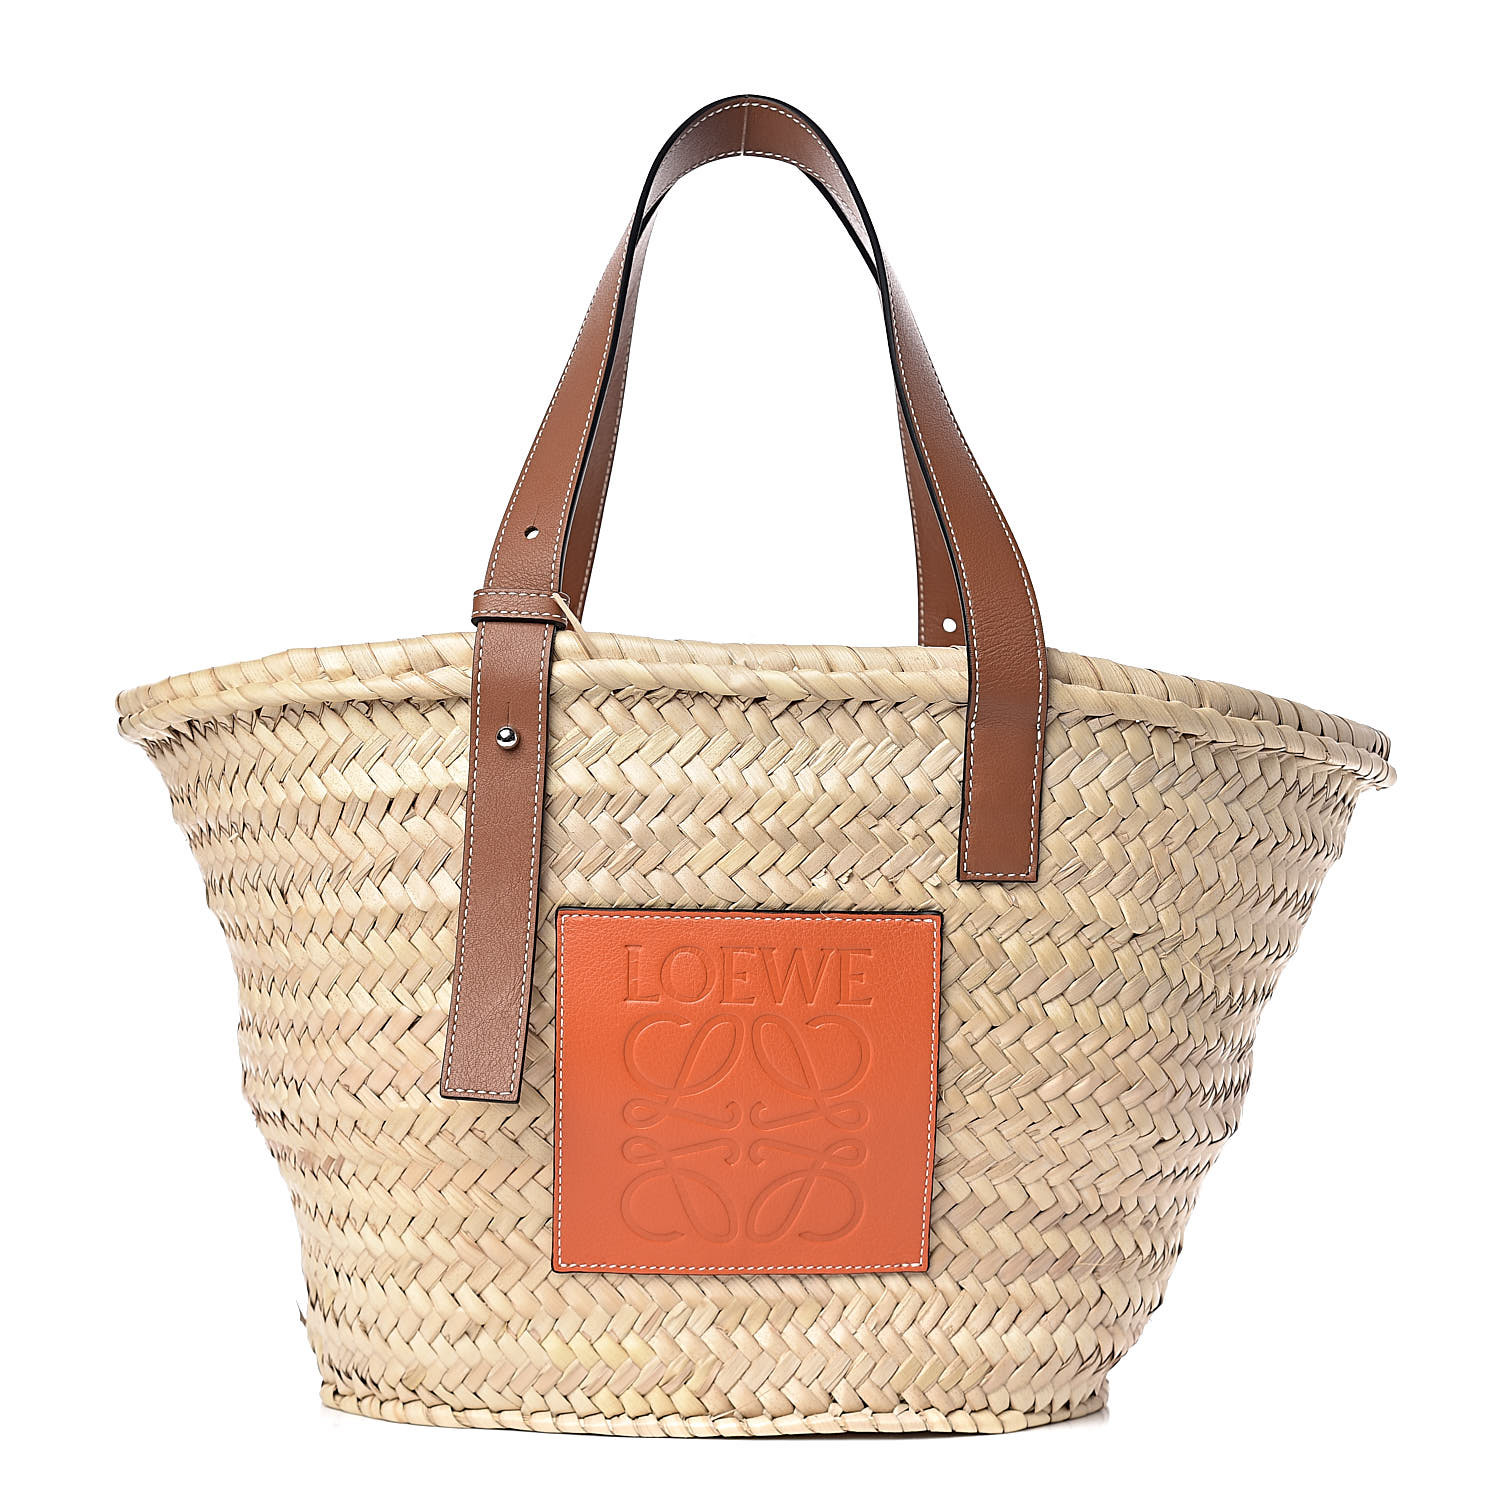 LOEWE Raffia Basket Tote Bag Natural Tan Orange 470996